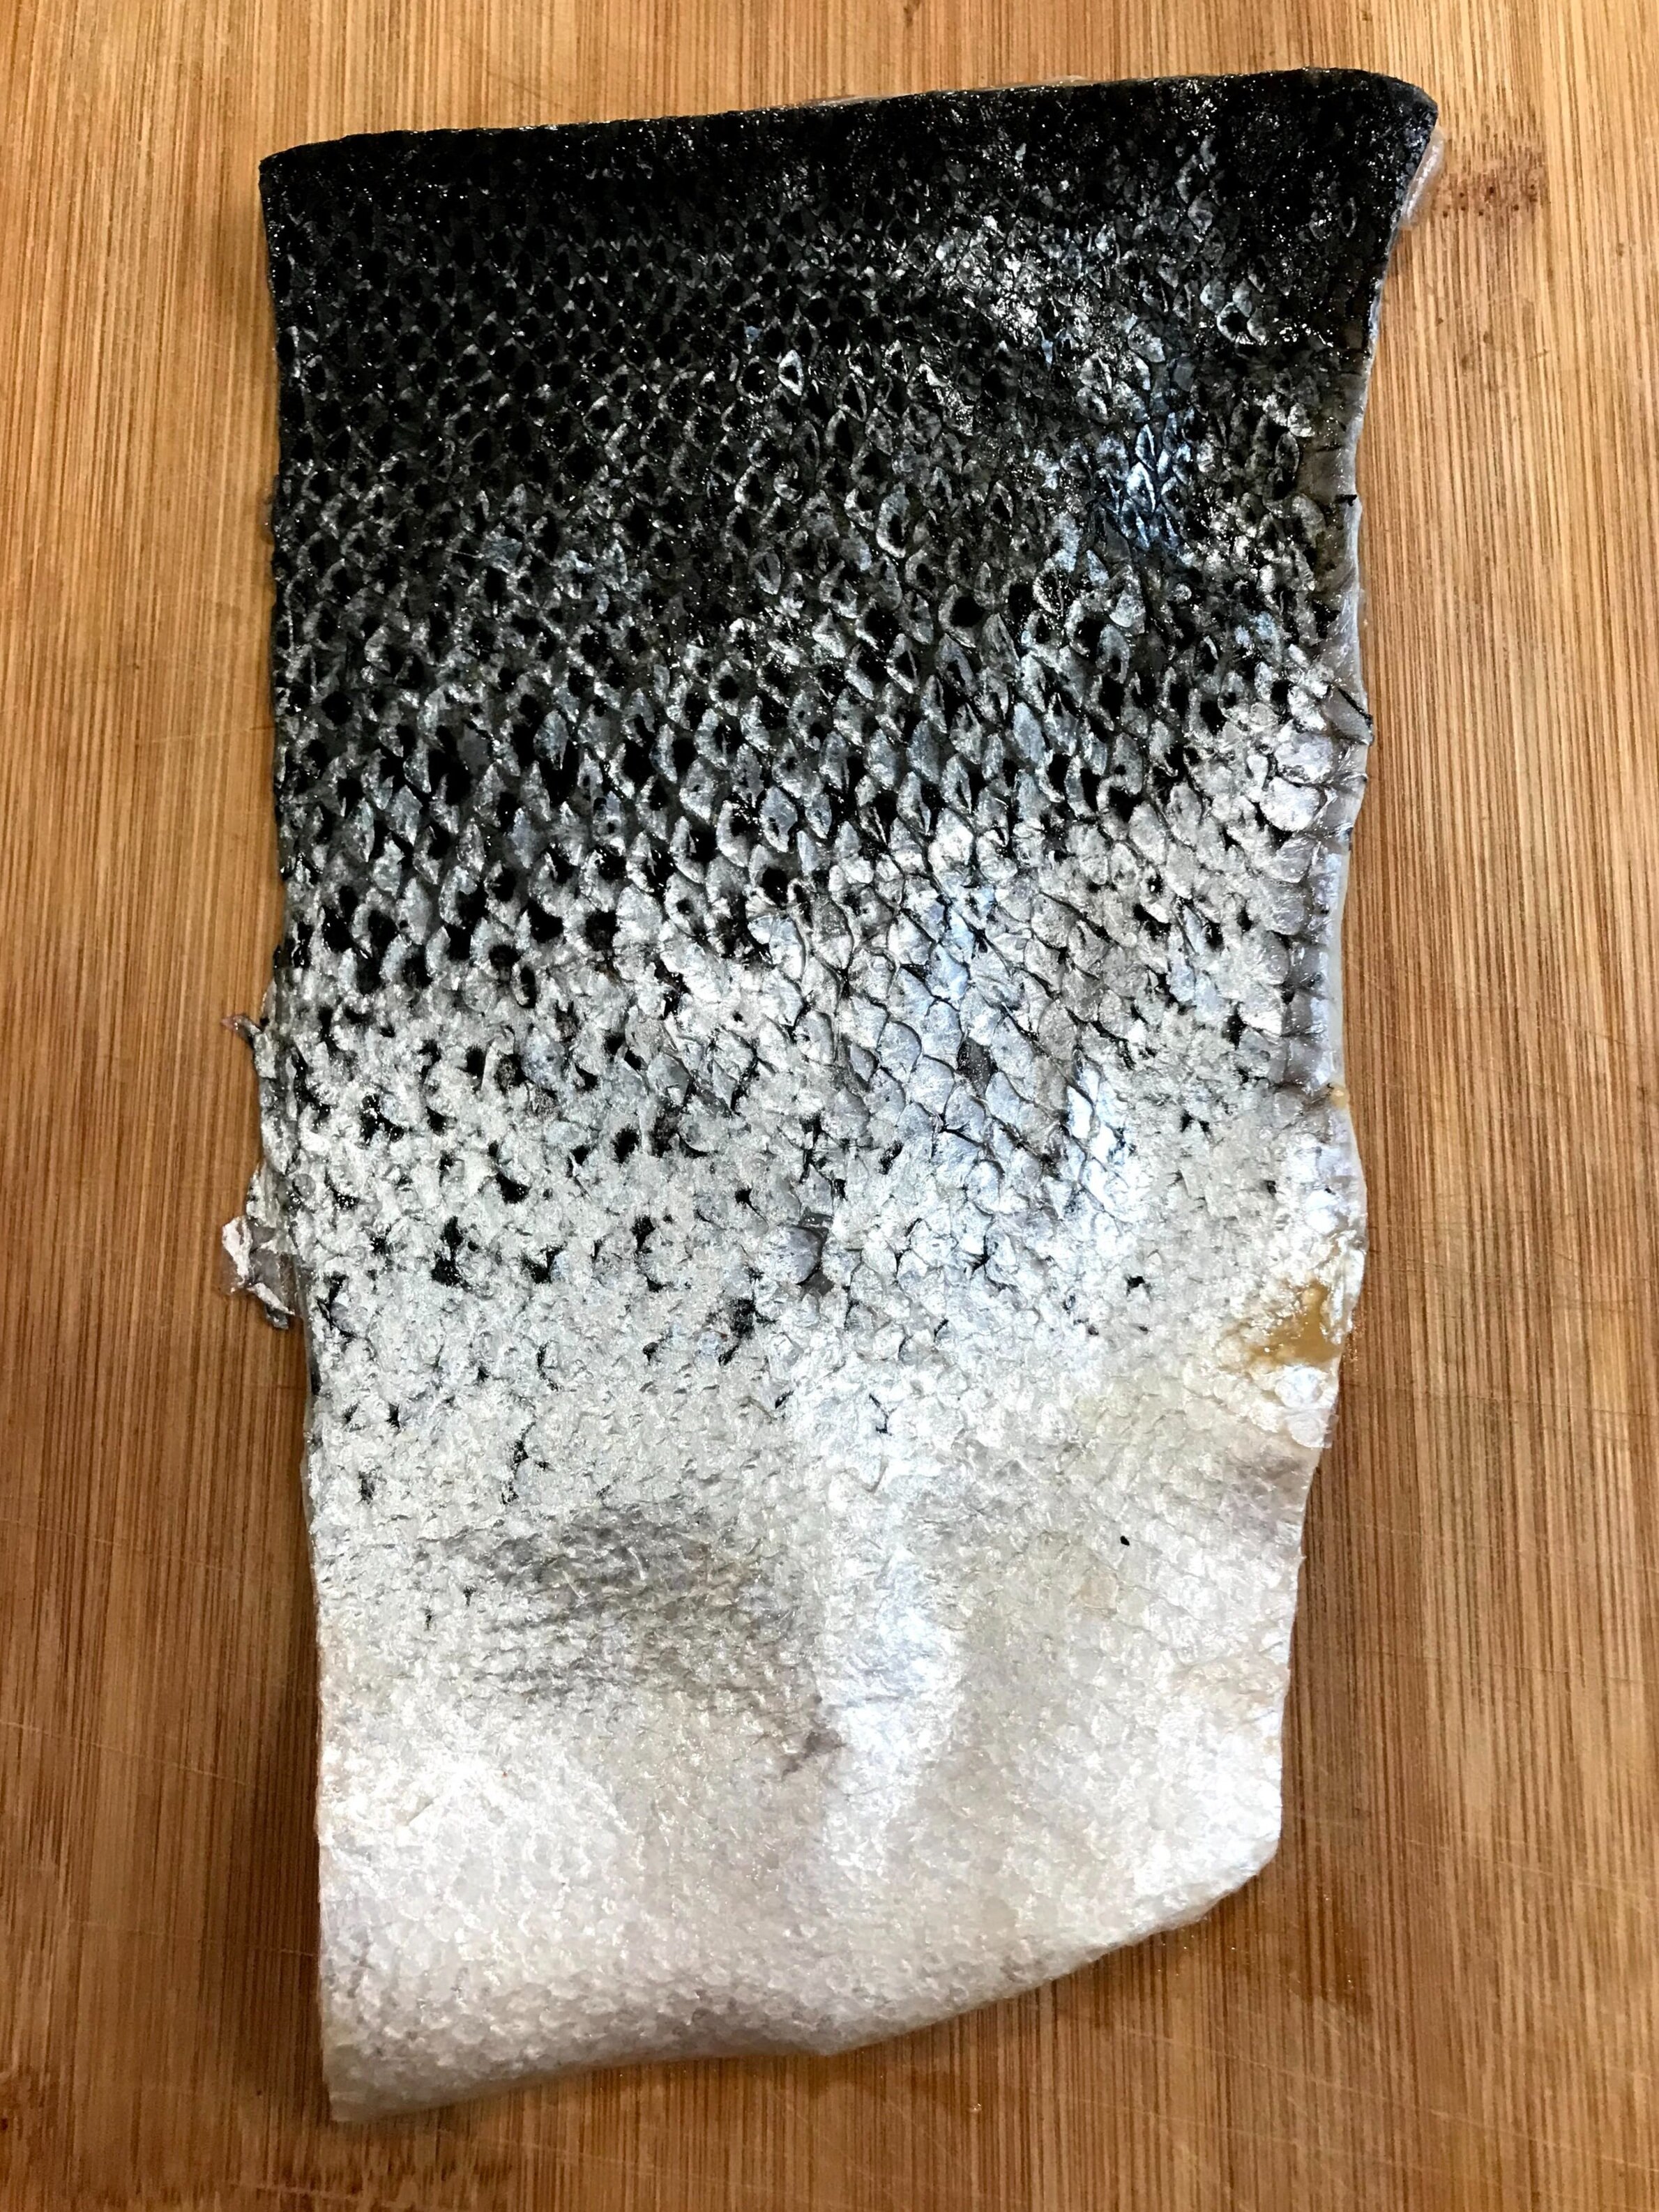 cured salmon skin